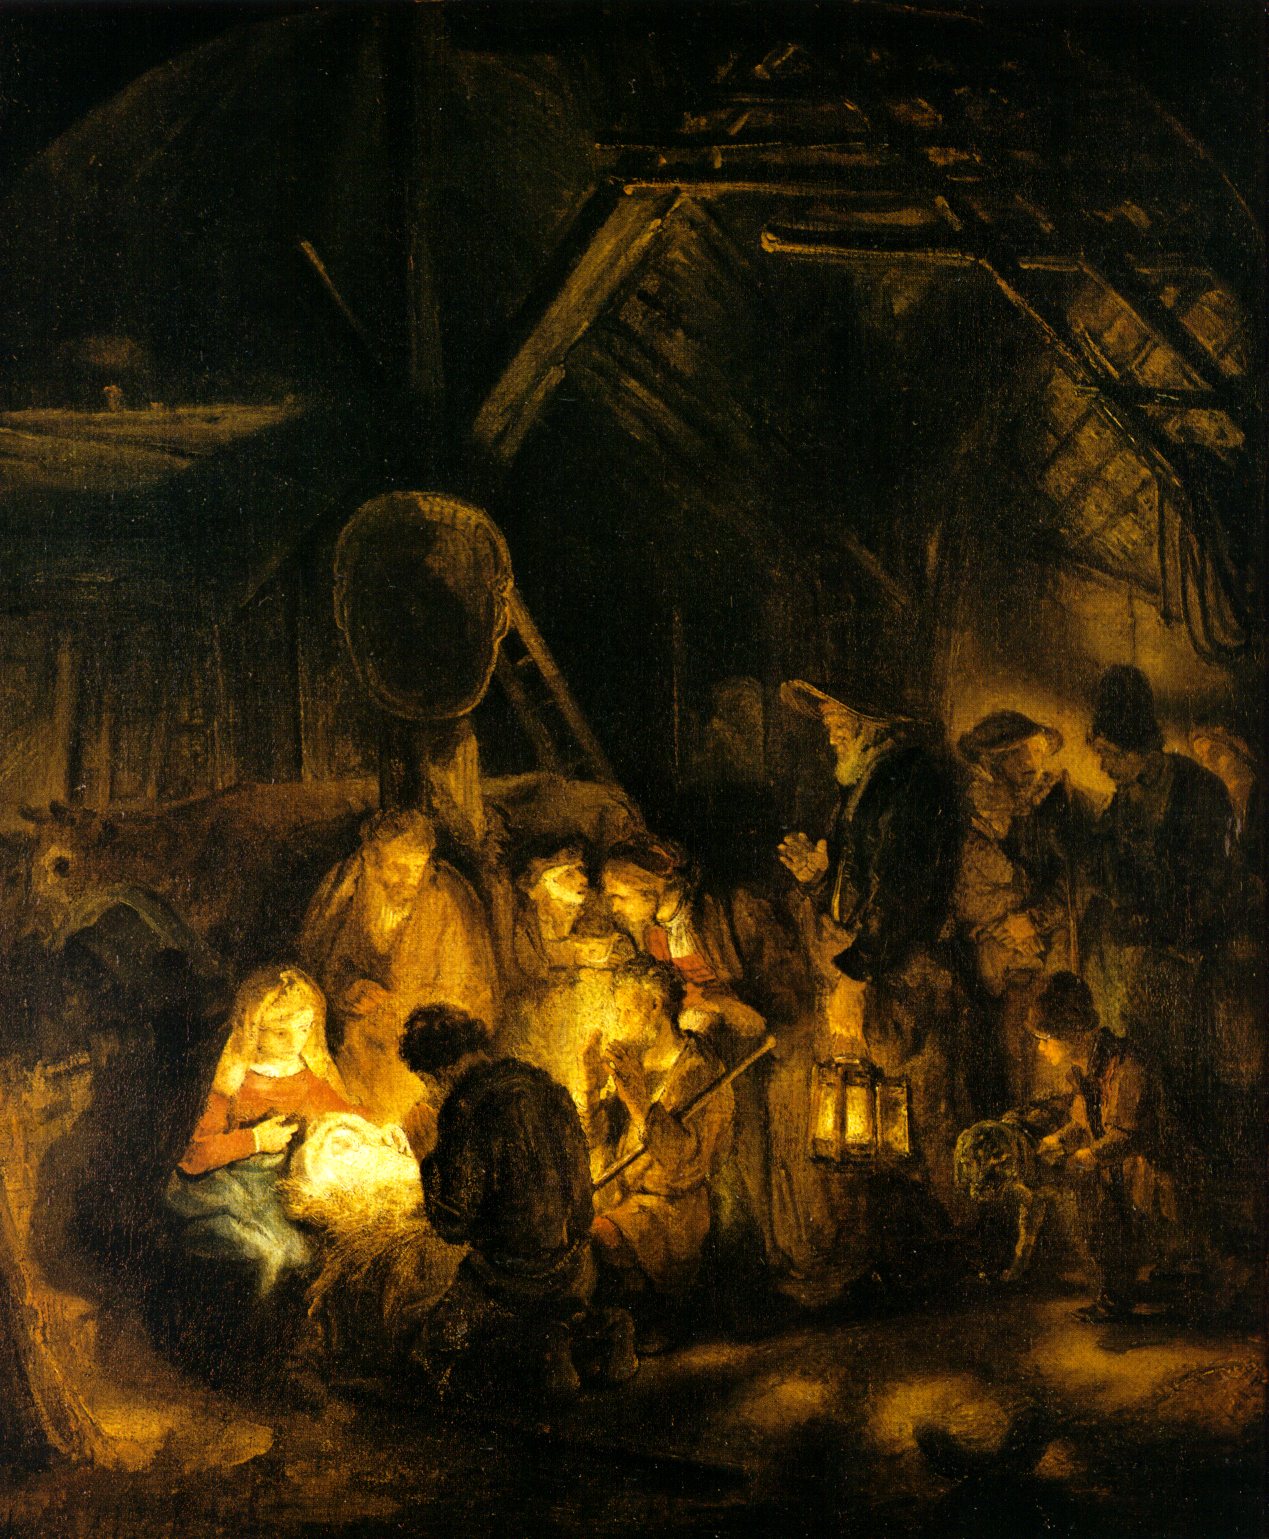 Рембрандт Харменс ван Рейн. "Поклонение пастухов". 1646. Национальная галерея, Лондон.